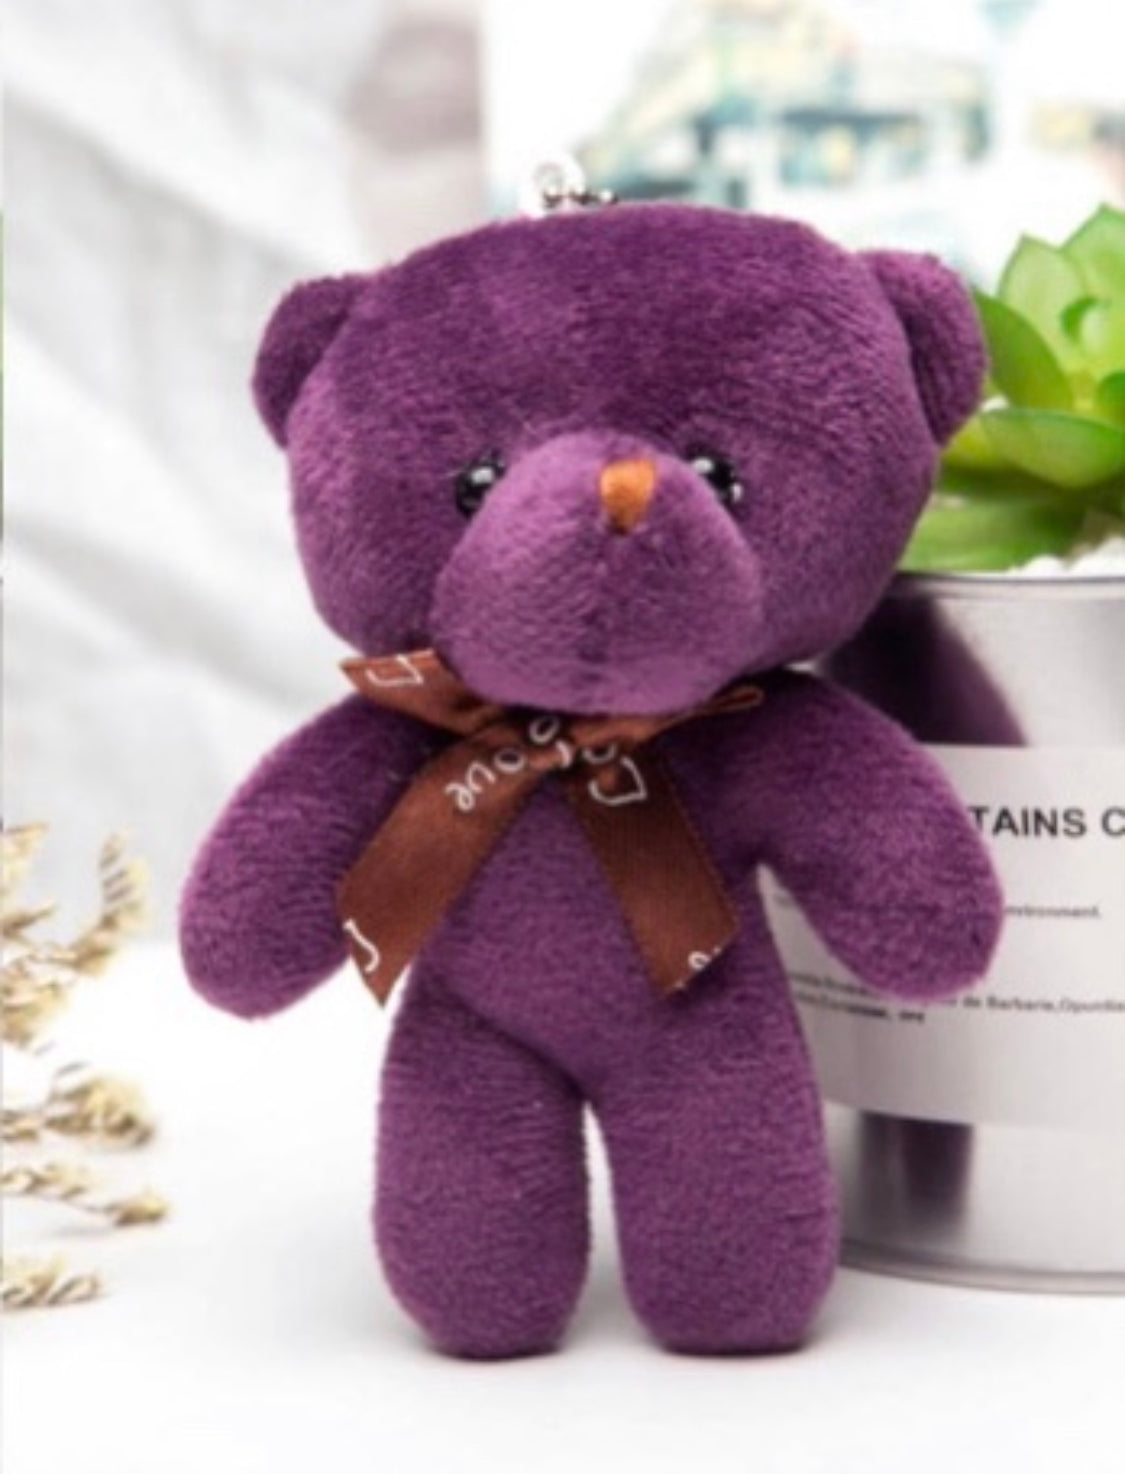 Palm-sized Keychain Teddy Love Bears (5-Pack) | Gift Teddy Bears